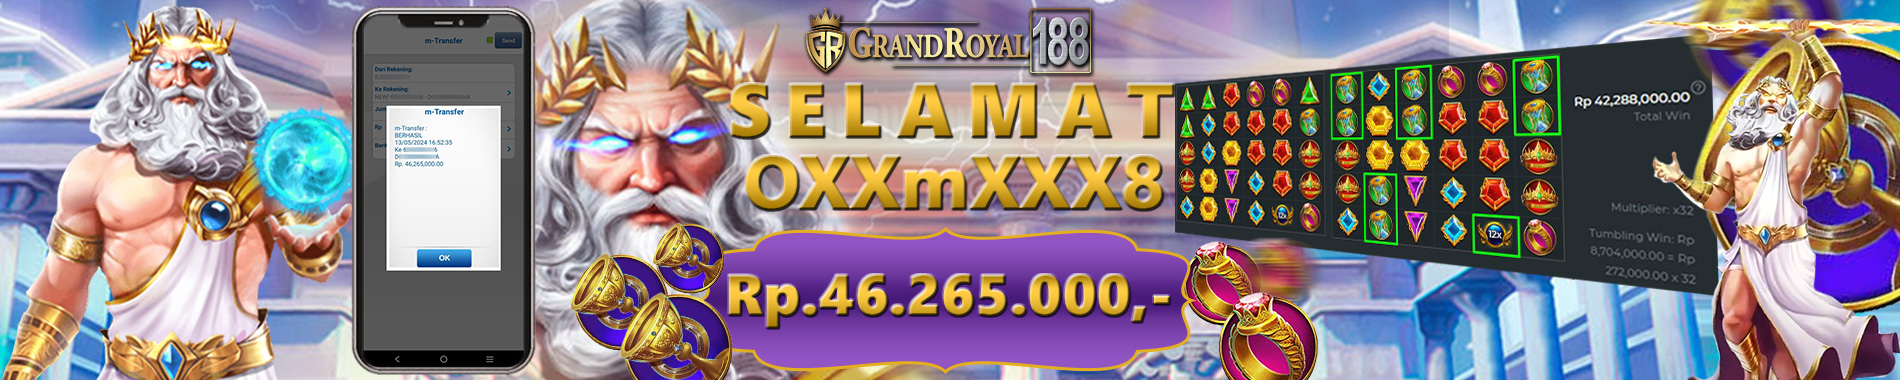 KEMENANGAN BESAR GRANDROYAL188 GAME GATES OF OLYMPUS TARUHAN NOMINAL Rp.100.000,- KEMENANGAN SENILAI Rp.46.625.000,-